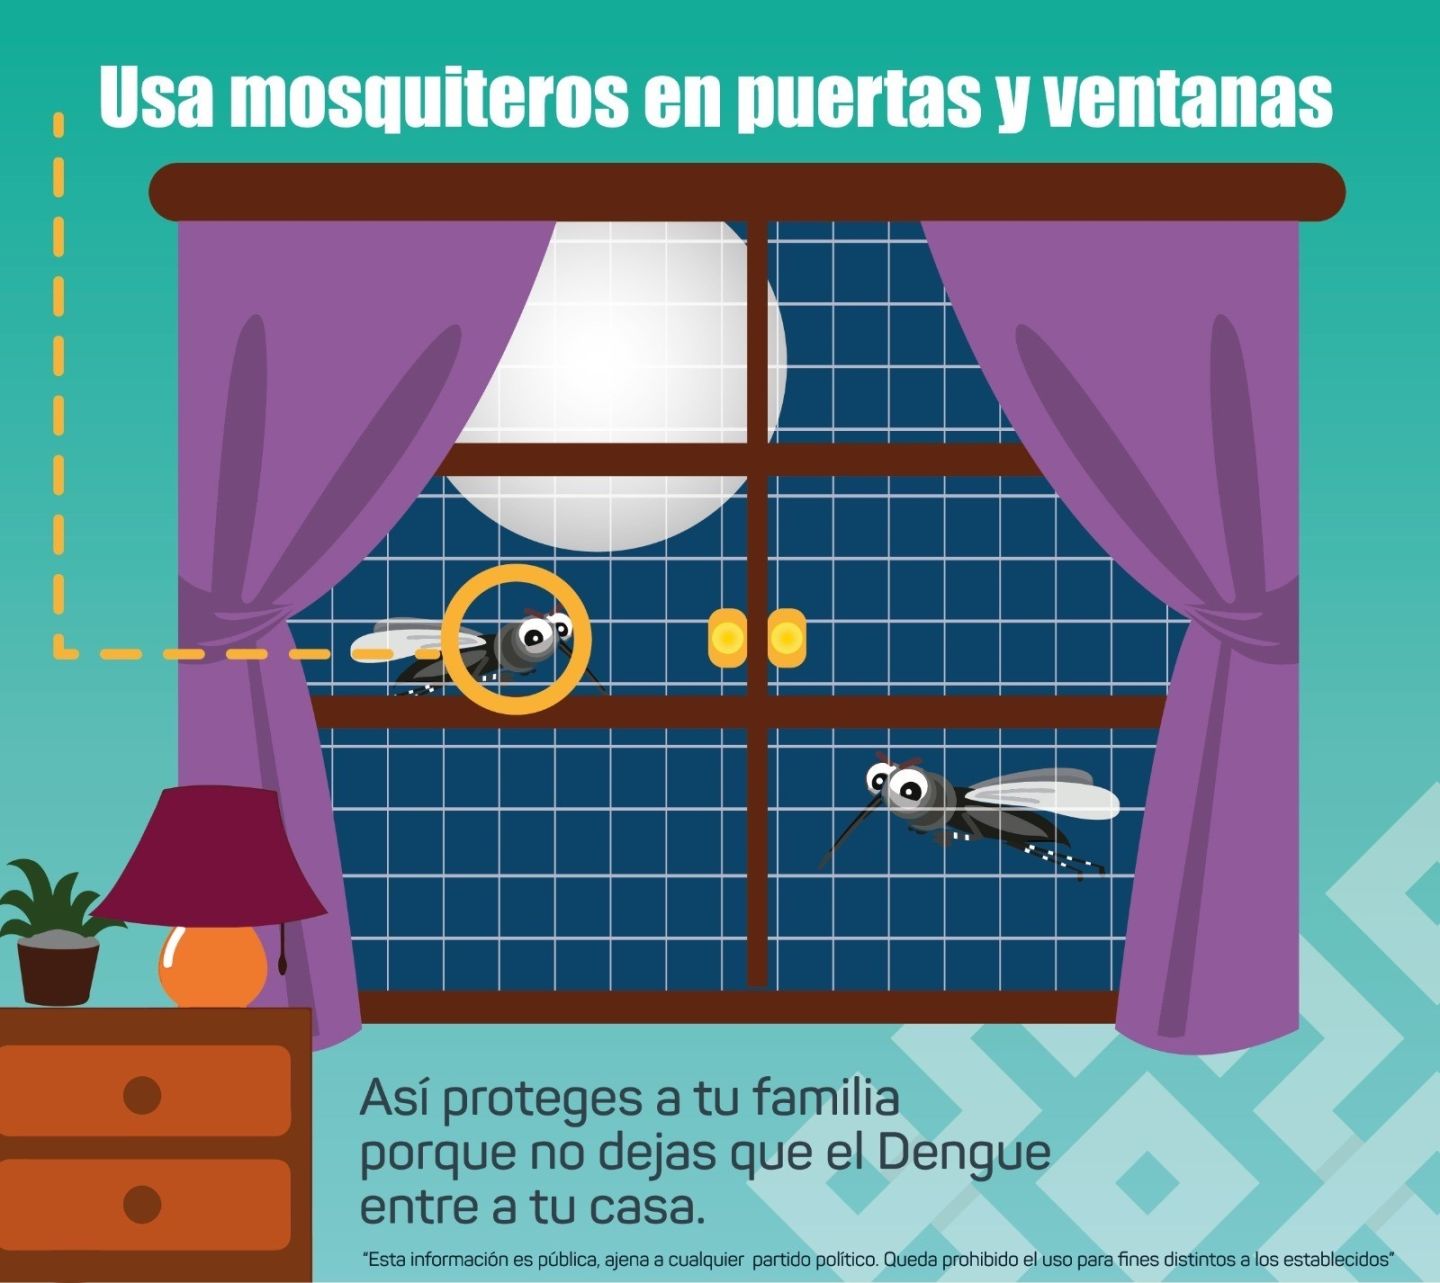 El dengue lo transmite el mosco Aedes Aegypti, por eso hay que eliminar los criaderos